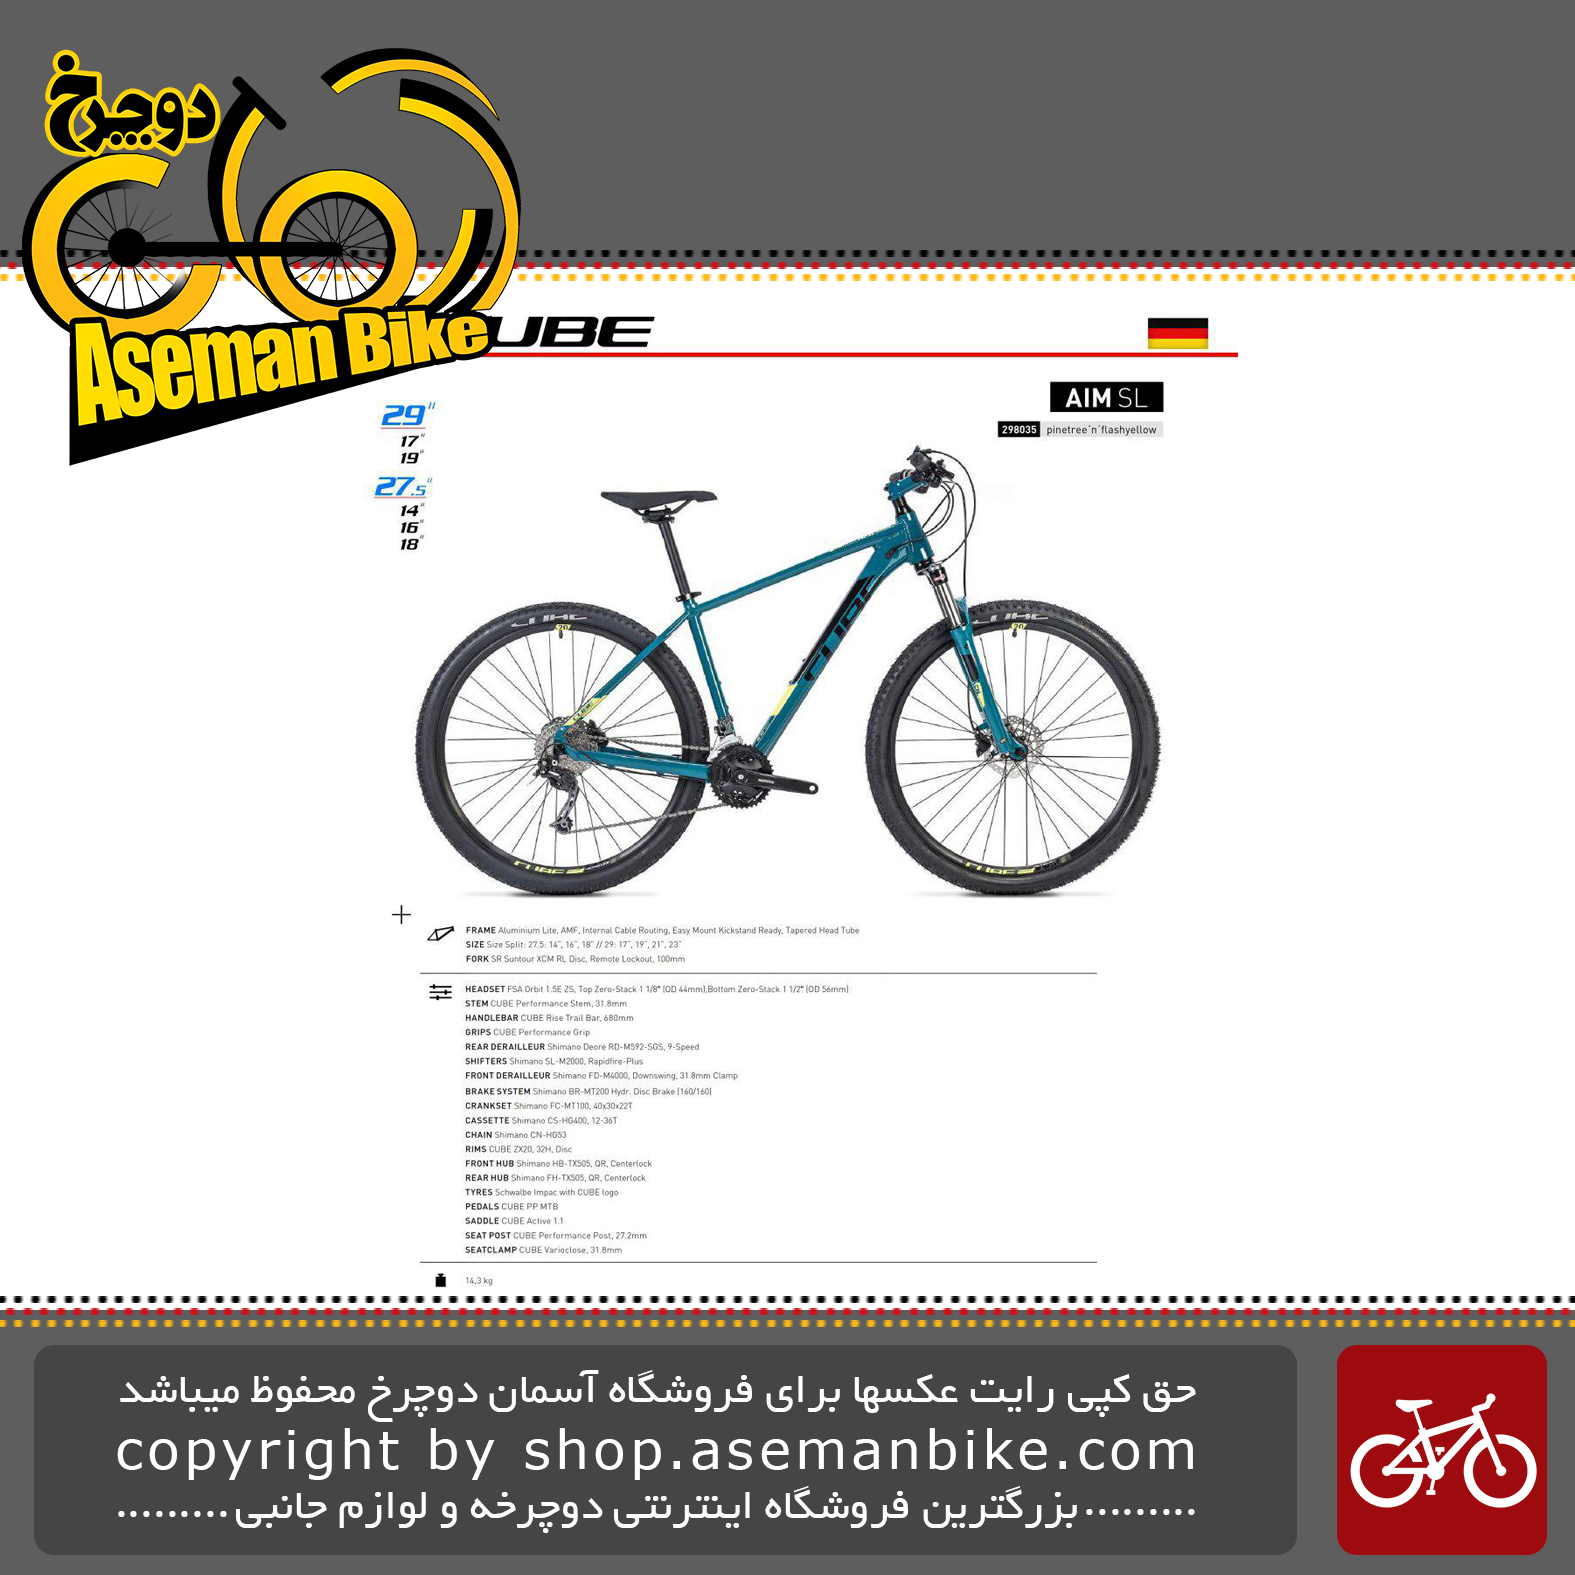 دوچرخه کوهستان کیوب مدل آیم اس ال فیروزه ای تیره و زرد لایت سایز 27.5 2019 CUBE Mountain Bicycle Aim SL 27.5 2019